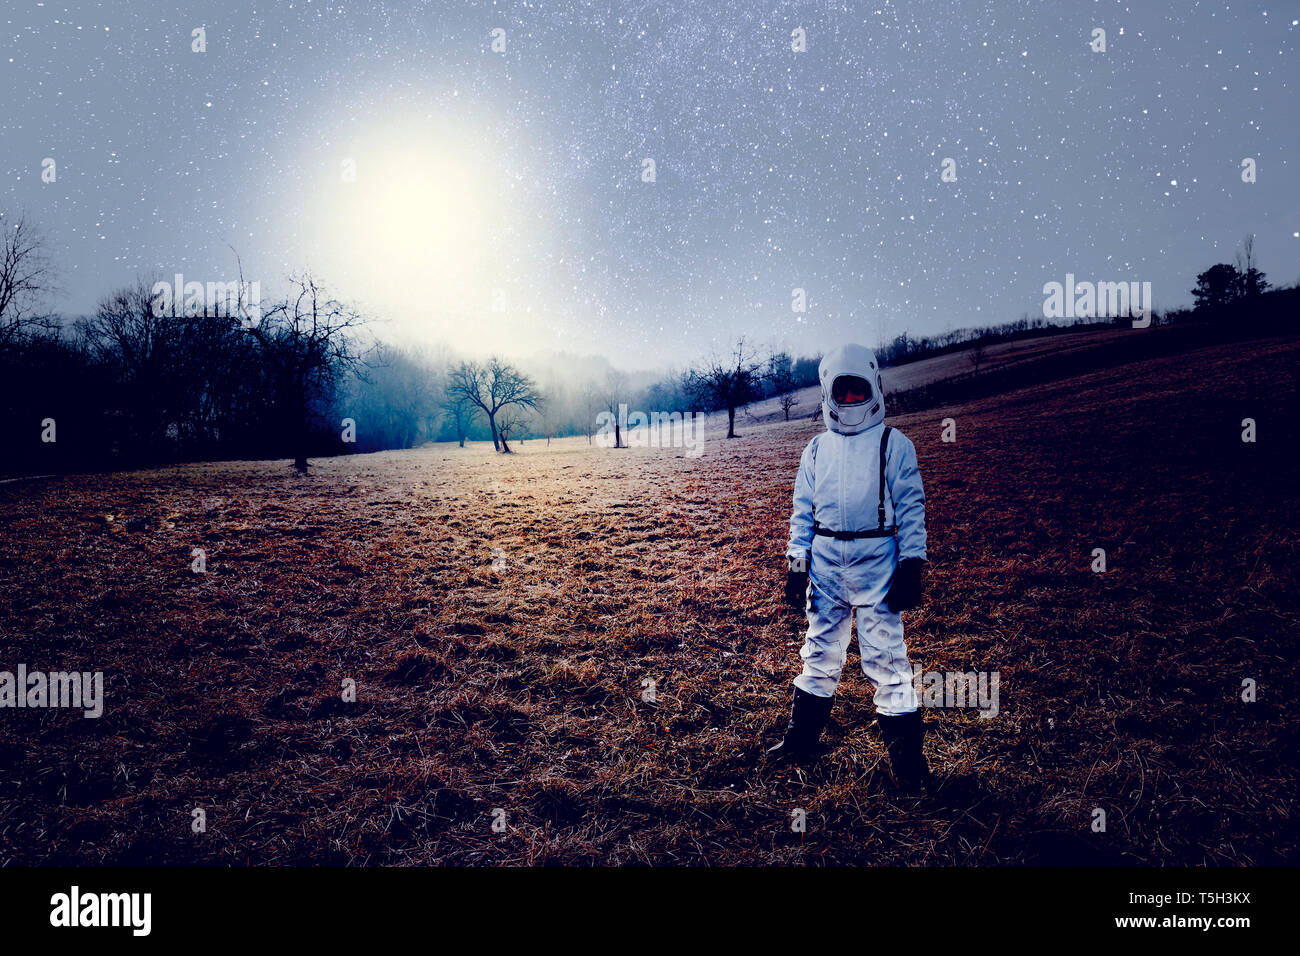 Boy vestidas de blanco traje espacial, el cielo estrellado. Foto de stock